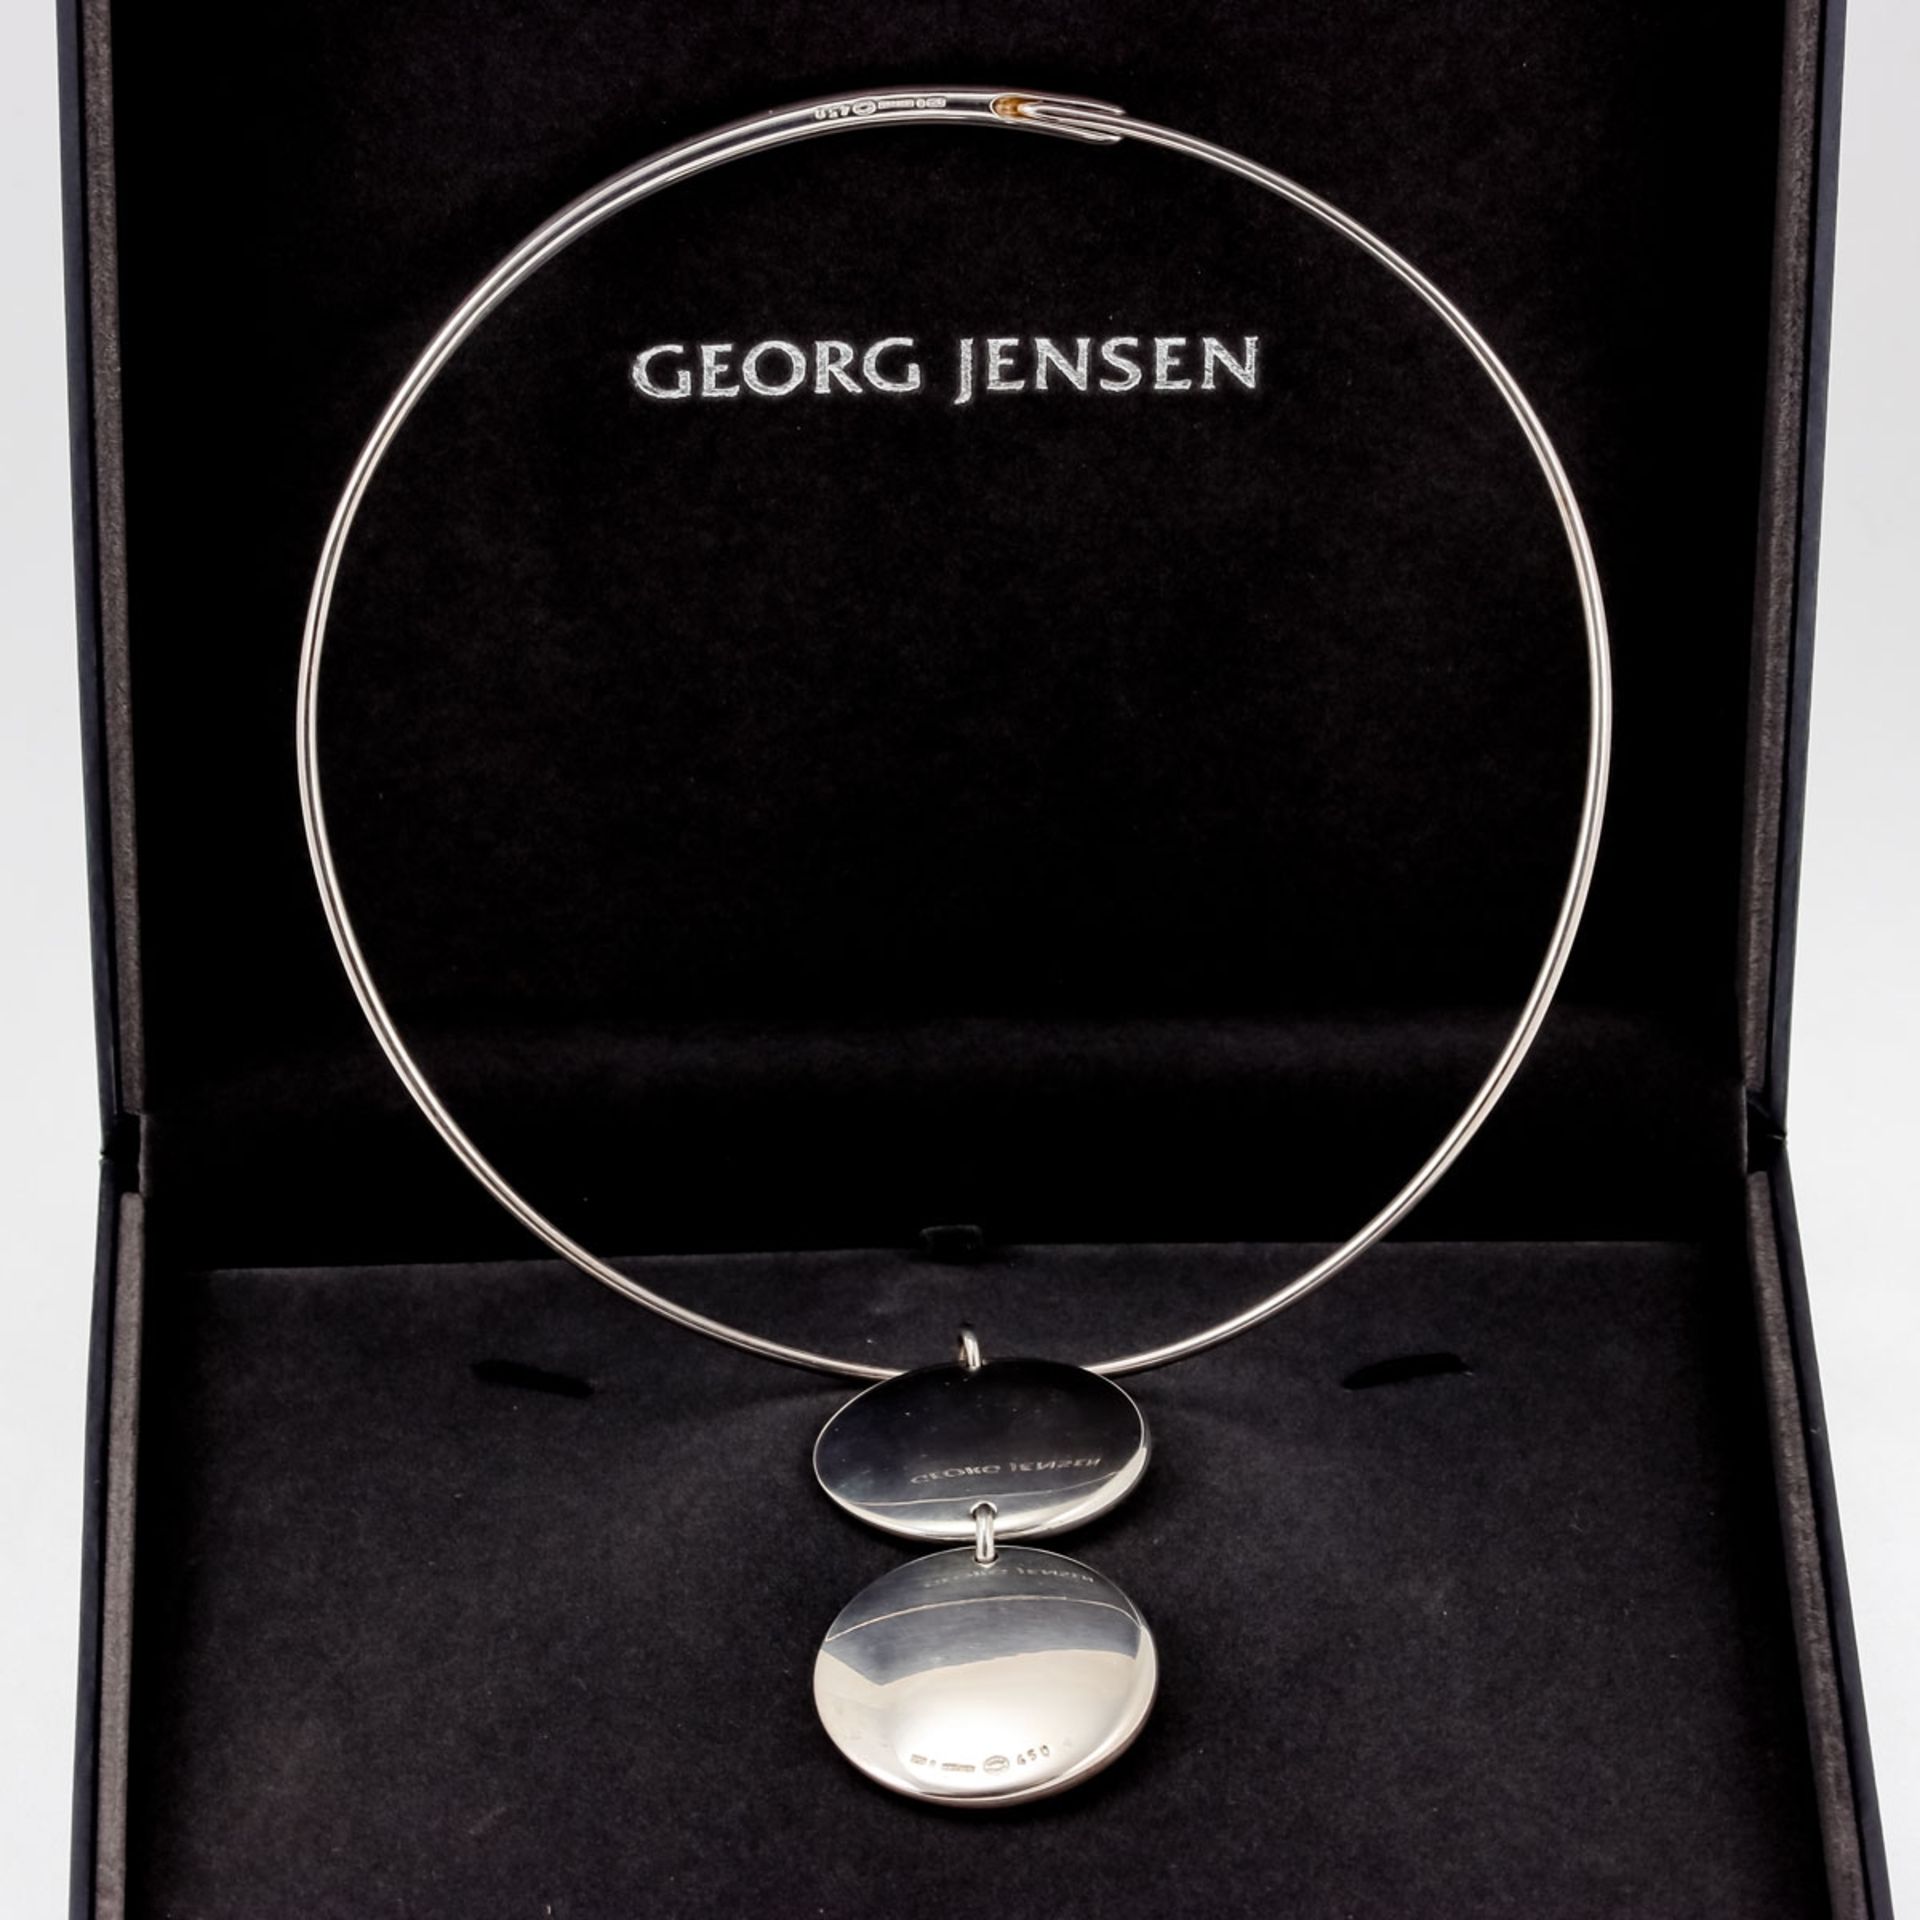 GEORG JENSEN - Collier Fa. Georg Jensen, Dänemark. Kopenhagen ca. 2004. Entwurf: Jaqueline R - Bild 2 aus 2